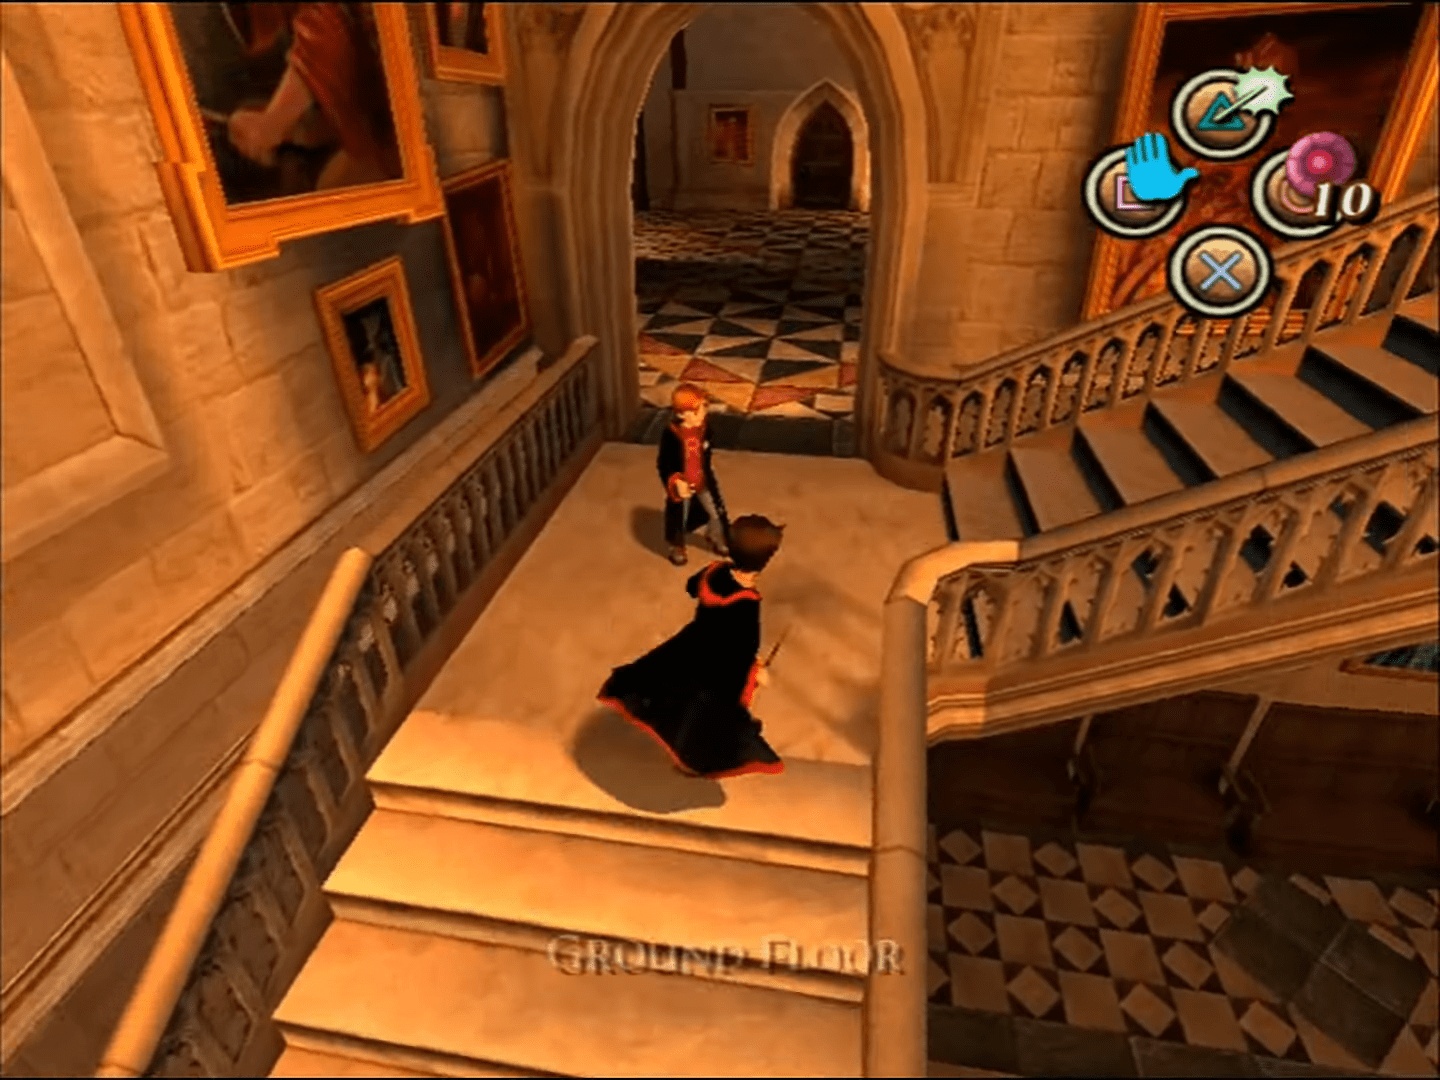 (Muitos fãs de Potter concordam: a versão PS2 da Câmara dos Segredos é um dos jogos de maior sucesso na franquia)